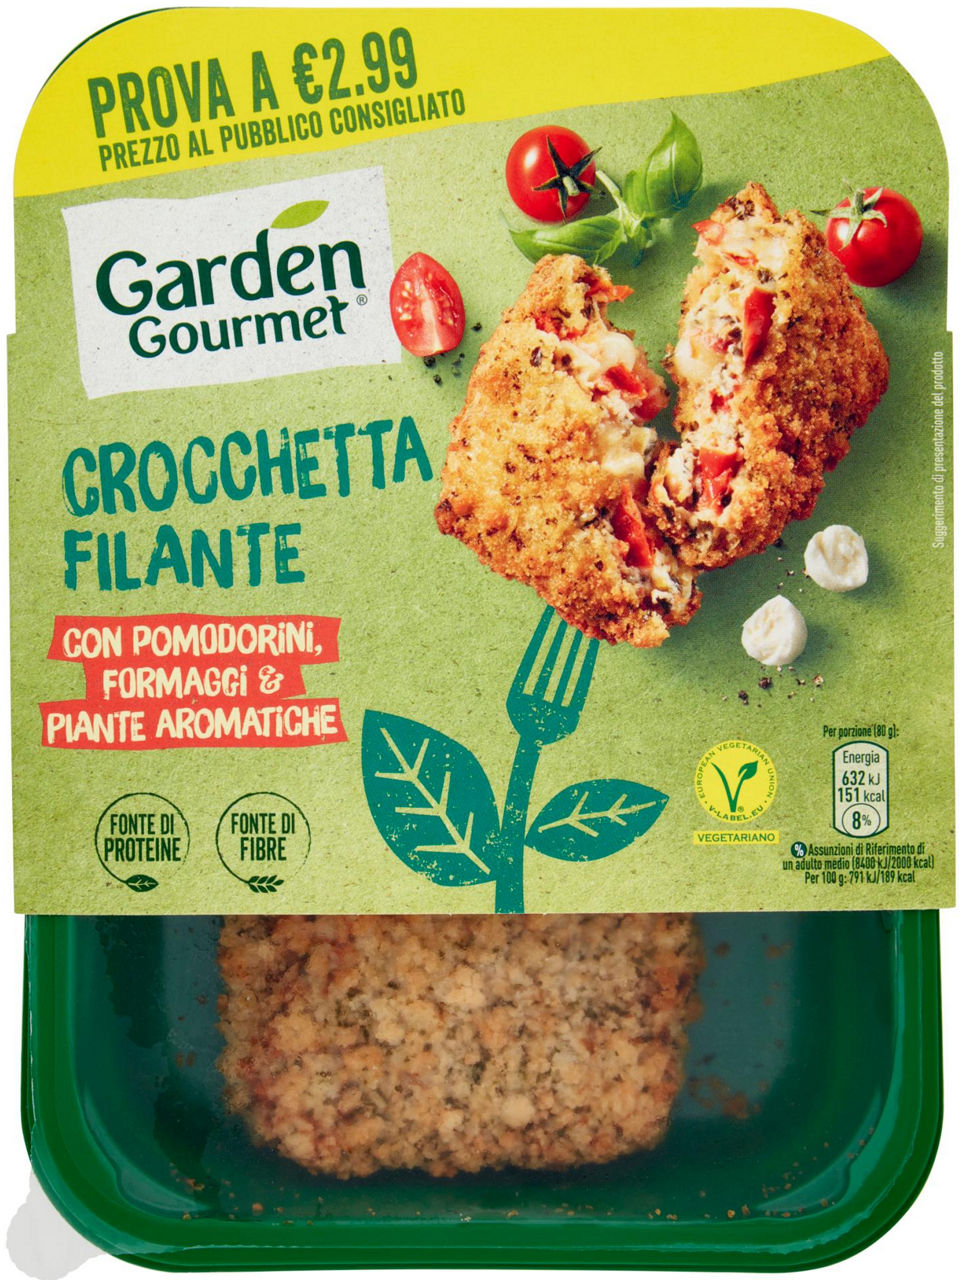 Crocchetta mediterranea garden gourmet g 160